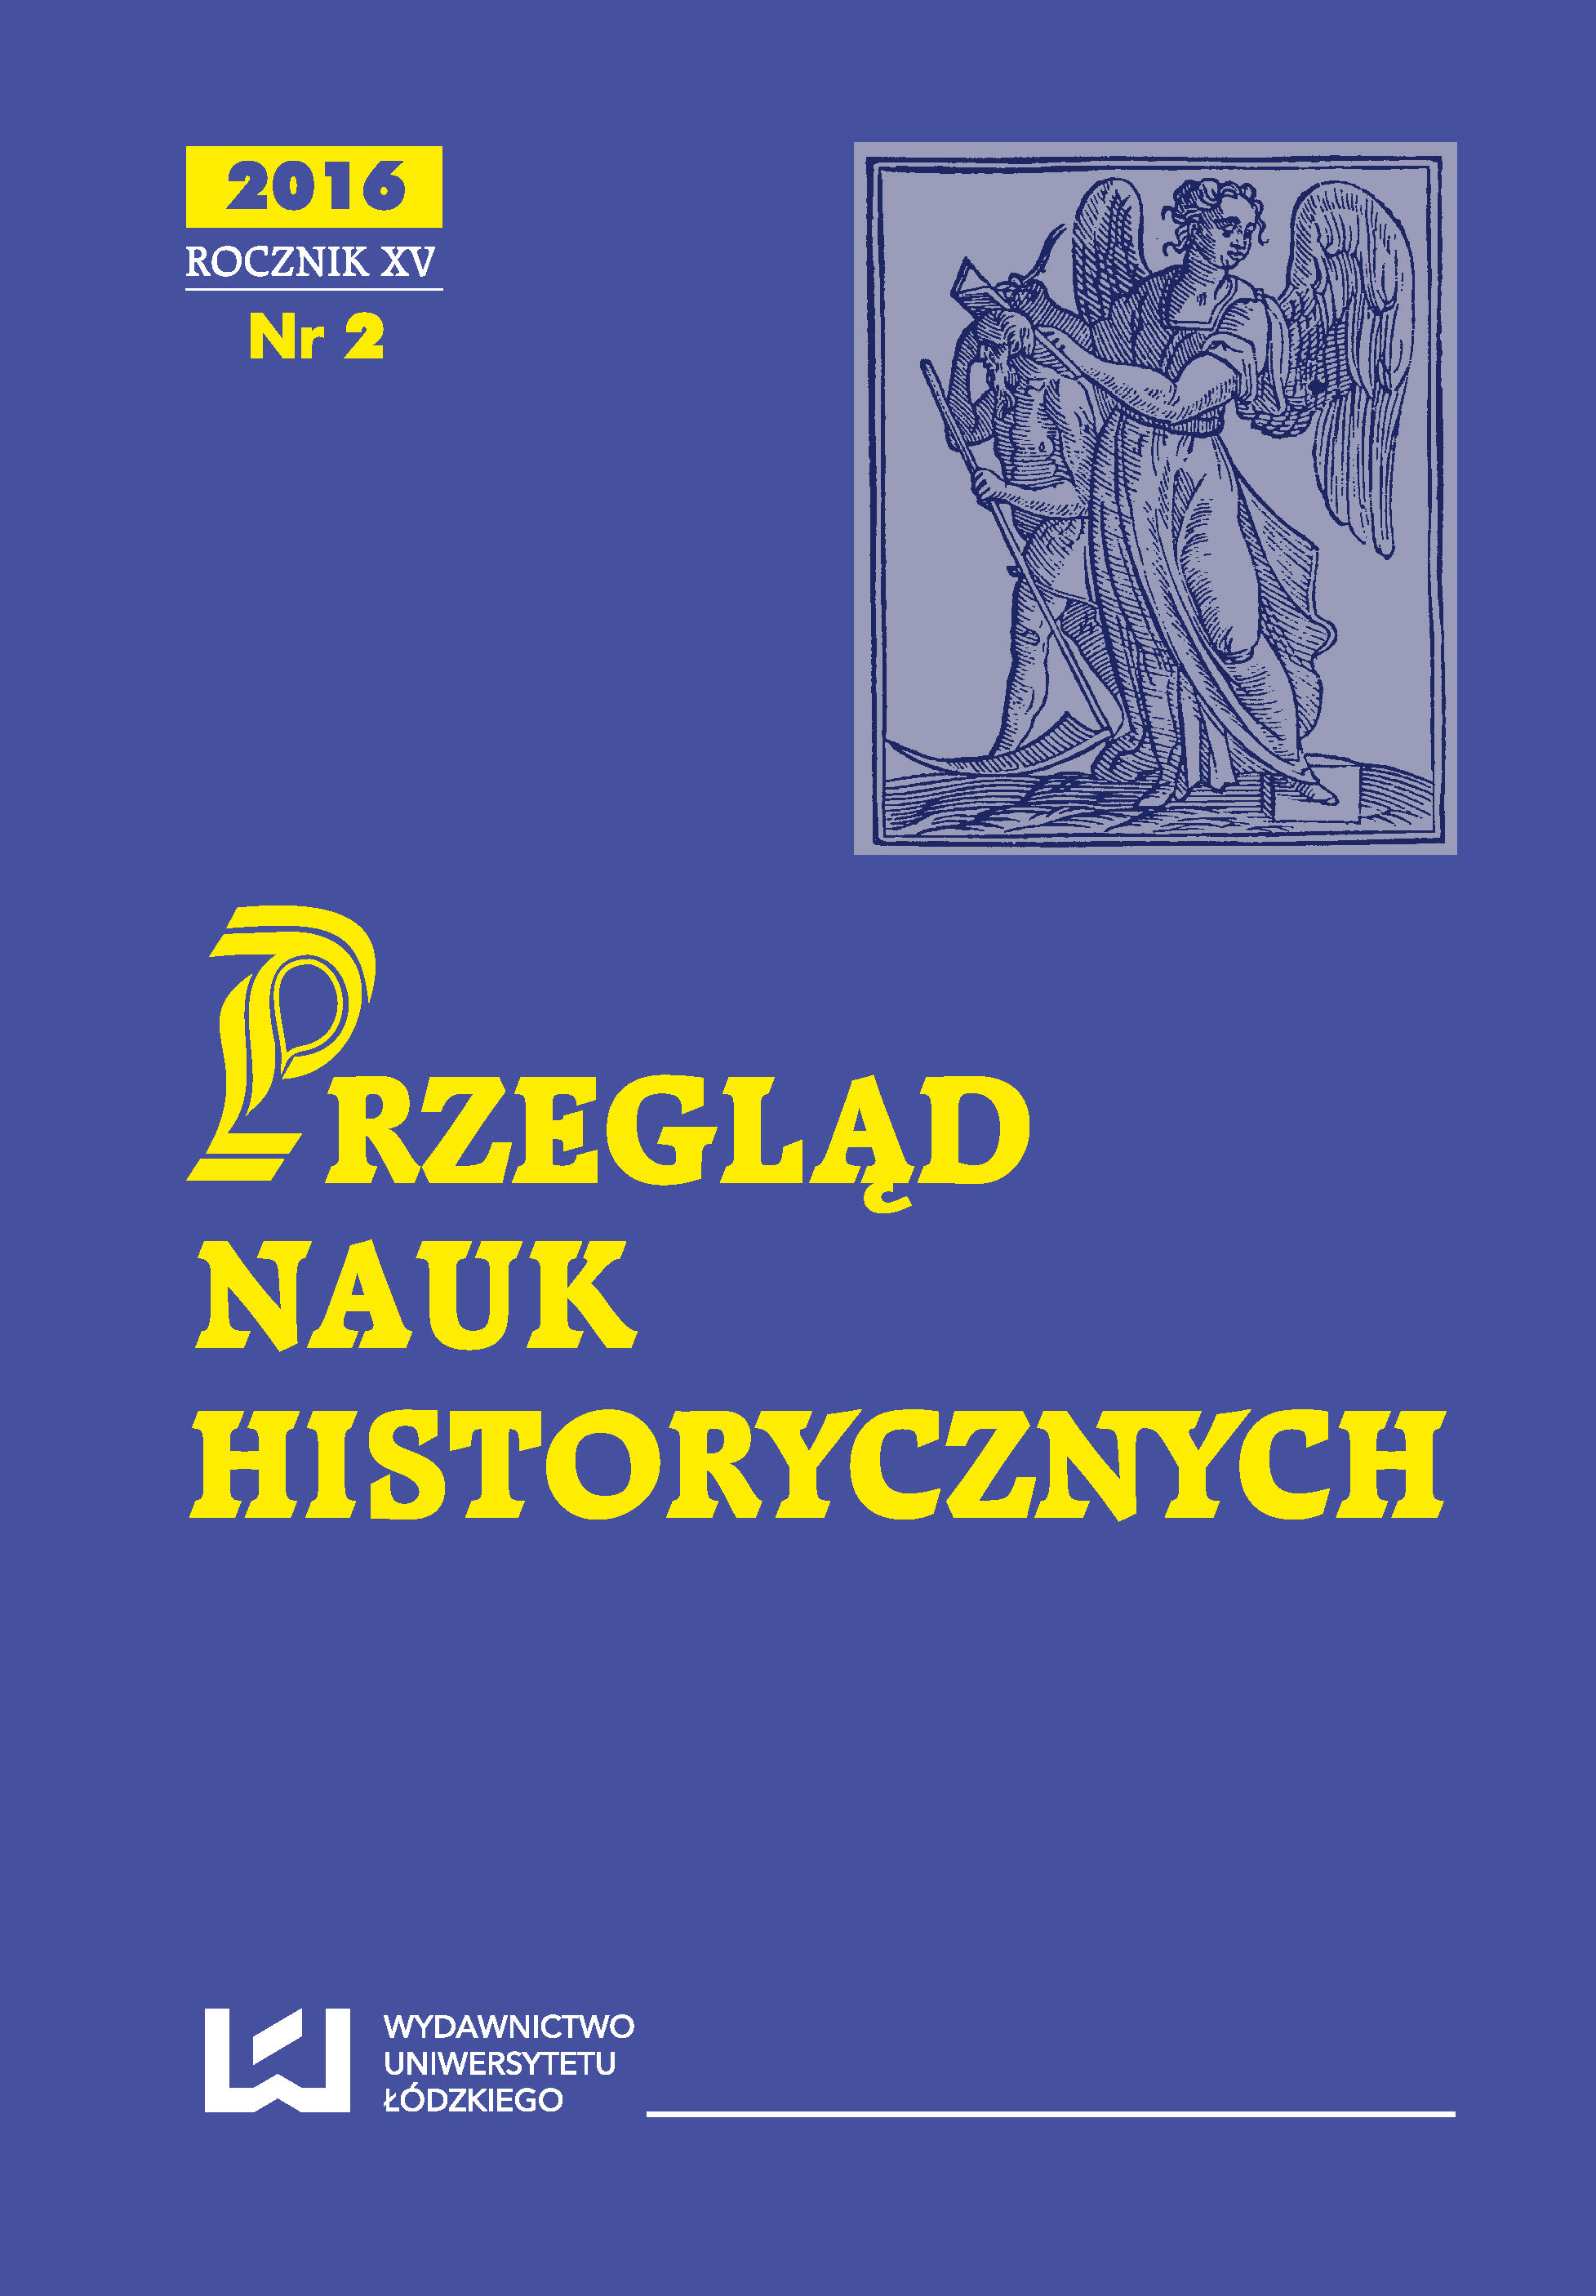 Duszpasterstwo i życie religijne parafii Rembieszyce w latach 1800–1945. Z dziejów społeczności lokalnej